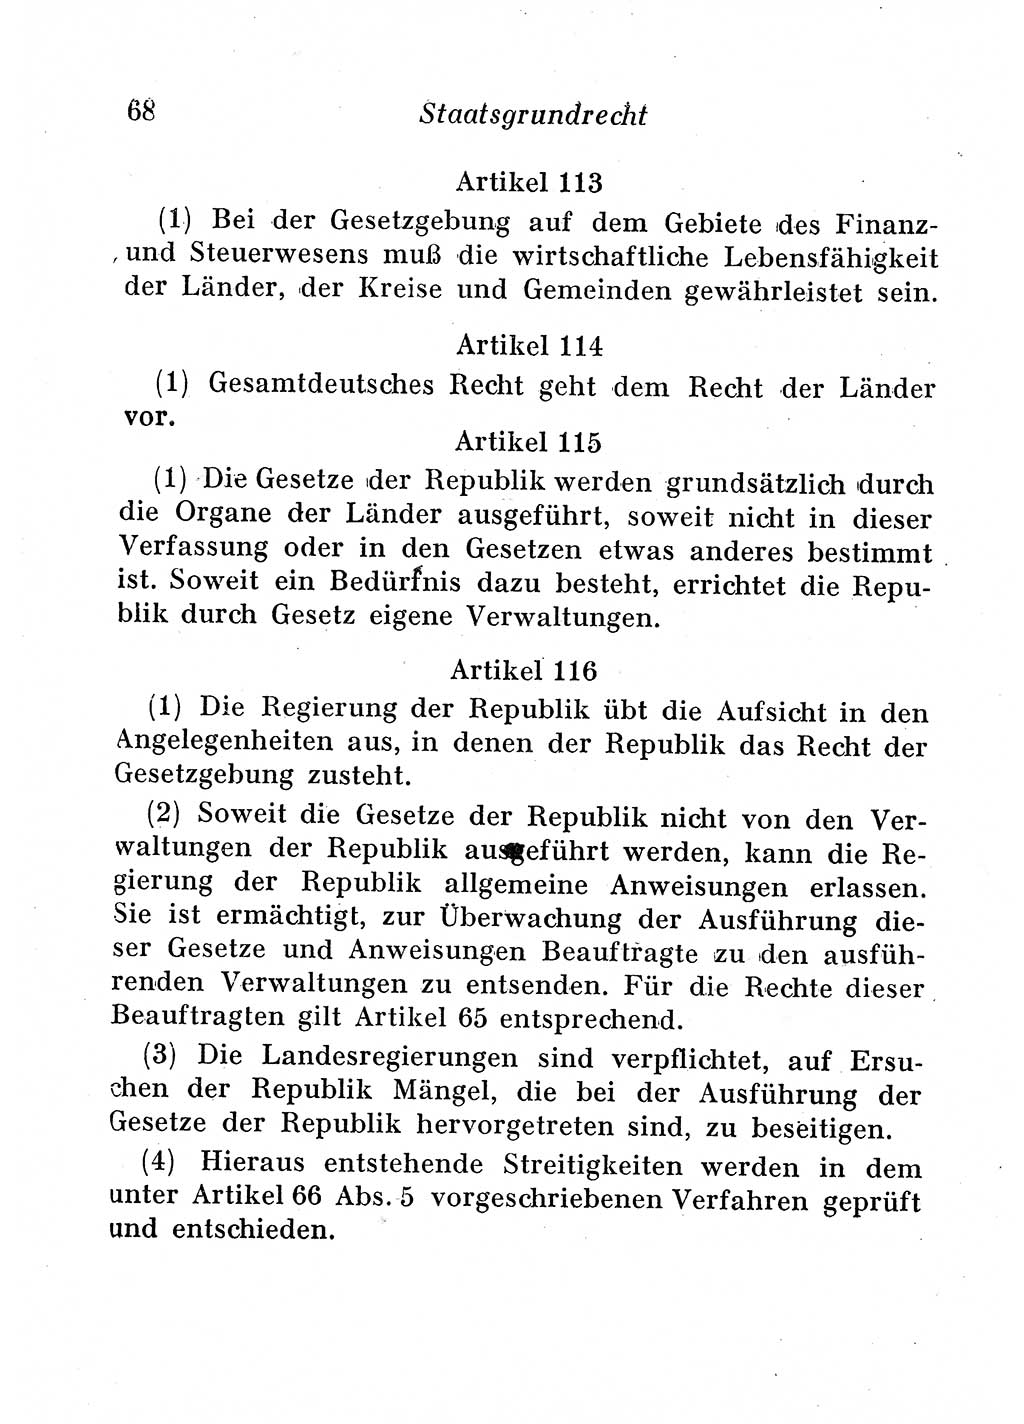 Staats- und verwaltungsrechtliche Gesetze der Deutschen Demokratischen Republik (DDR) 1958, Seite 68 (StVerwR Ges. DDR 1958, S. 68)